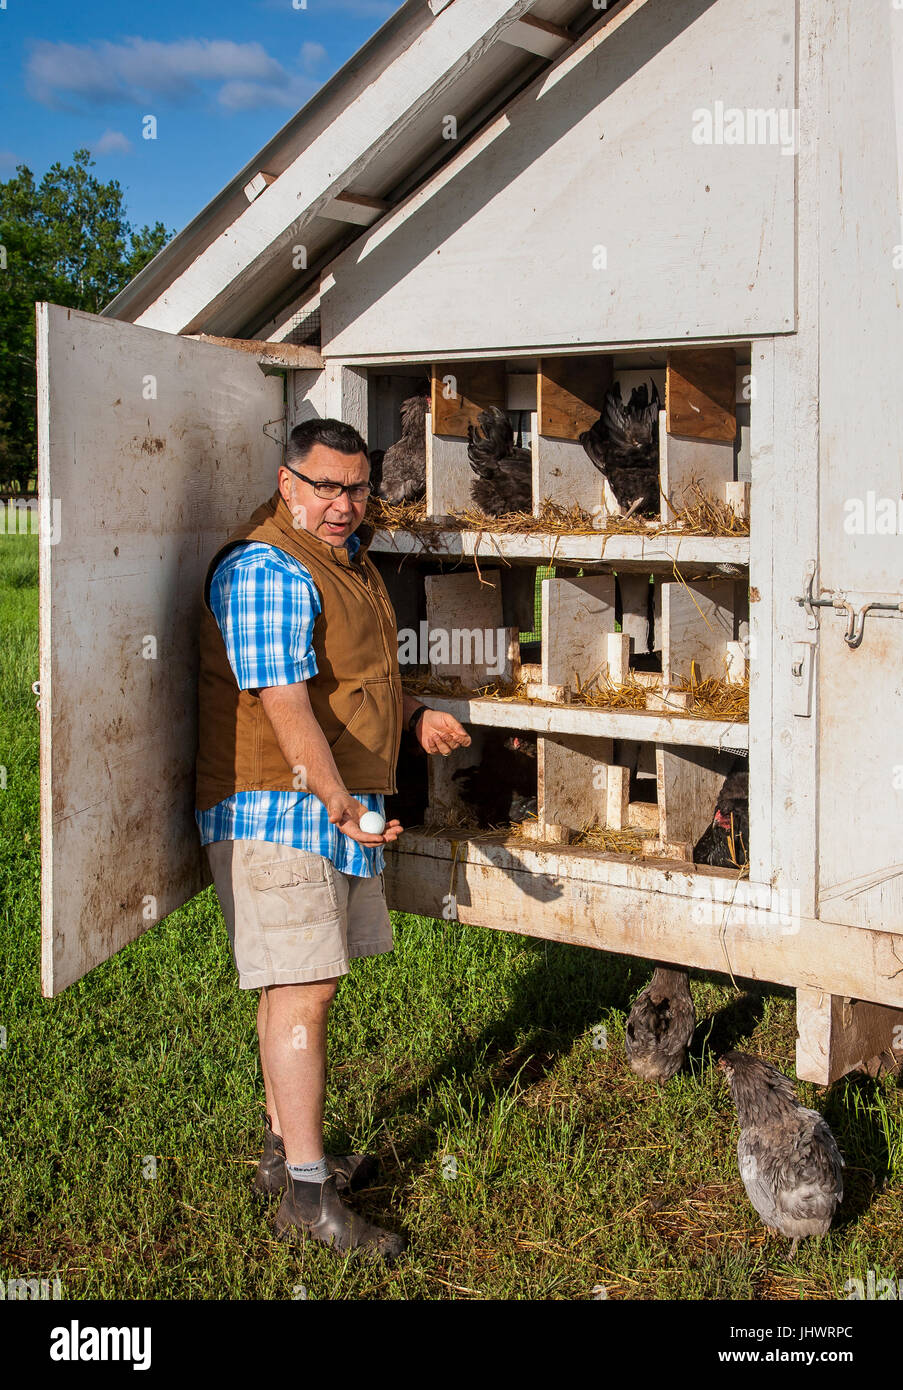 Landwirt tragen legere Kleidung, zeigt 40-50 männlich Ei in der hand, in der Nähe von offenen Hühnerstall Stockfoto